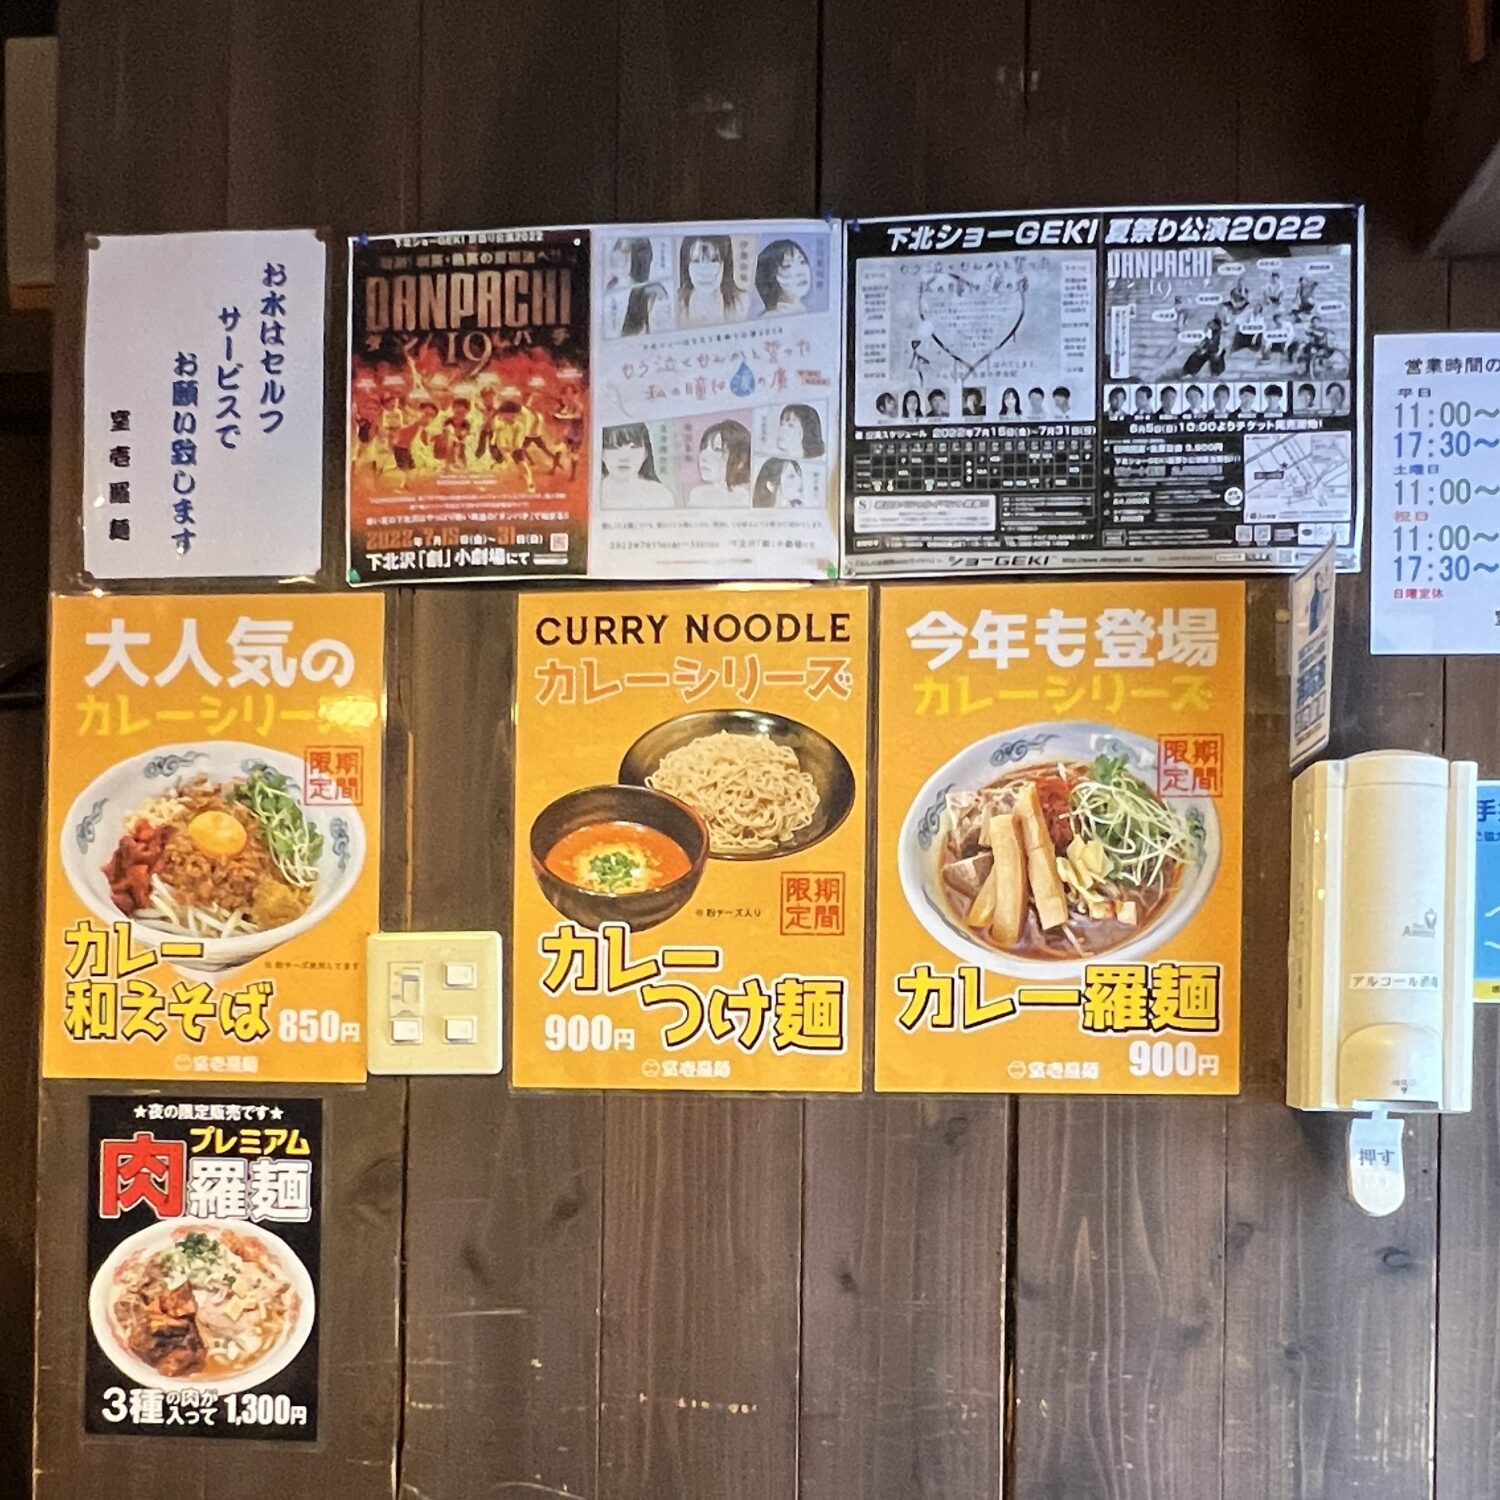 室壱羅麺(むろいち)の壁に貼ってあるカレーラーメンのポスターの写真